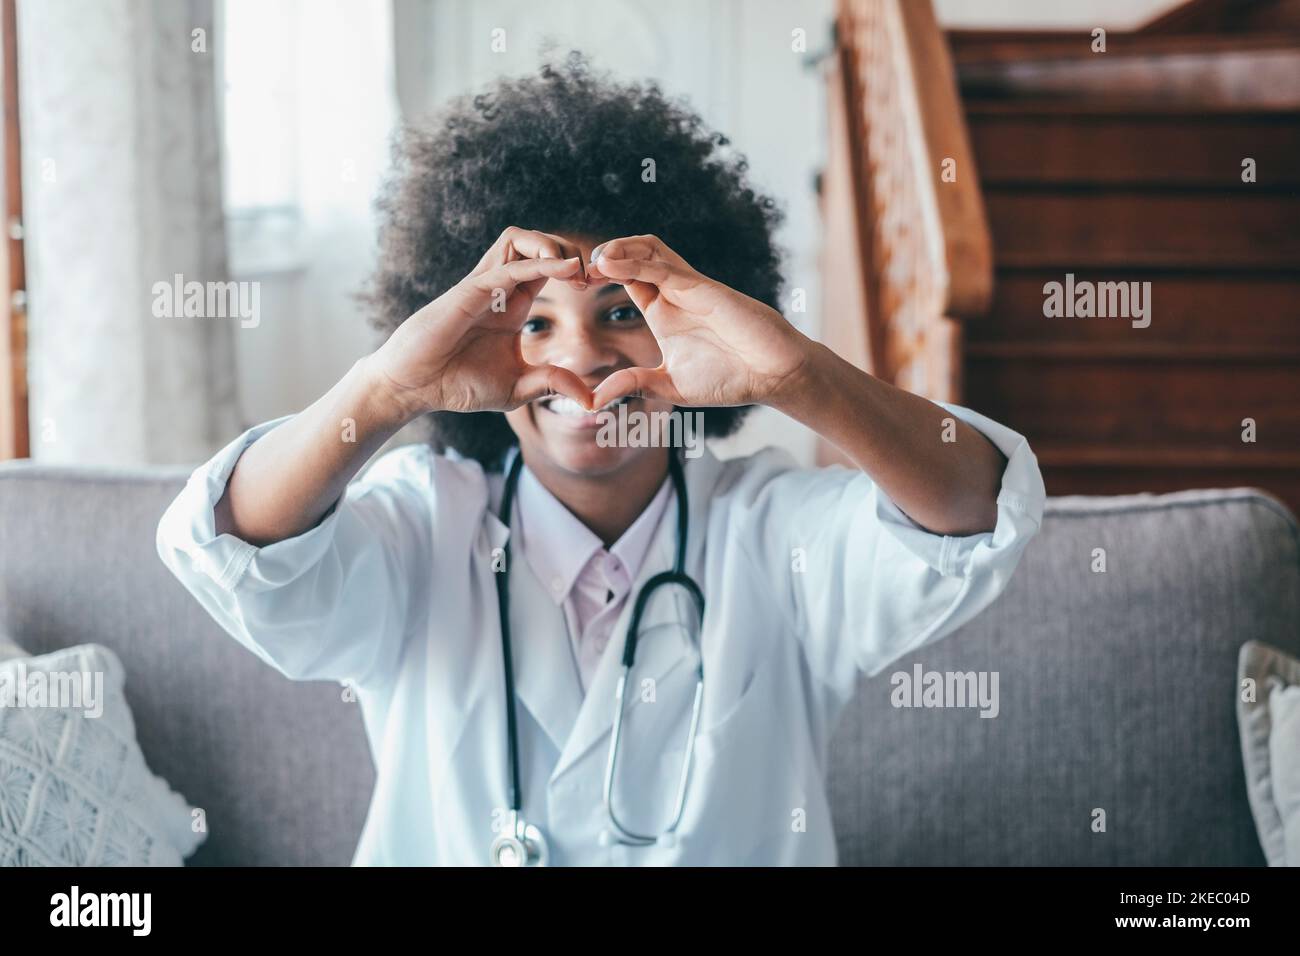 Femme médecin faisant le geste de forme de coeur avec les mains. Femme noire souriante médecin faisant un symbole d'amour avec ses mains. Professionnel de la santé exprimant l'amour et le soutien aux patients Banque D'Images